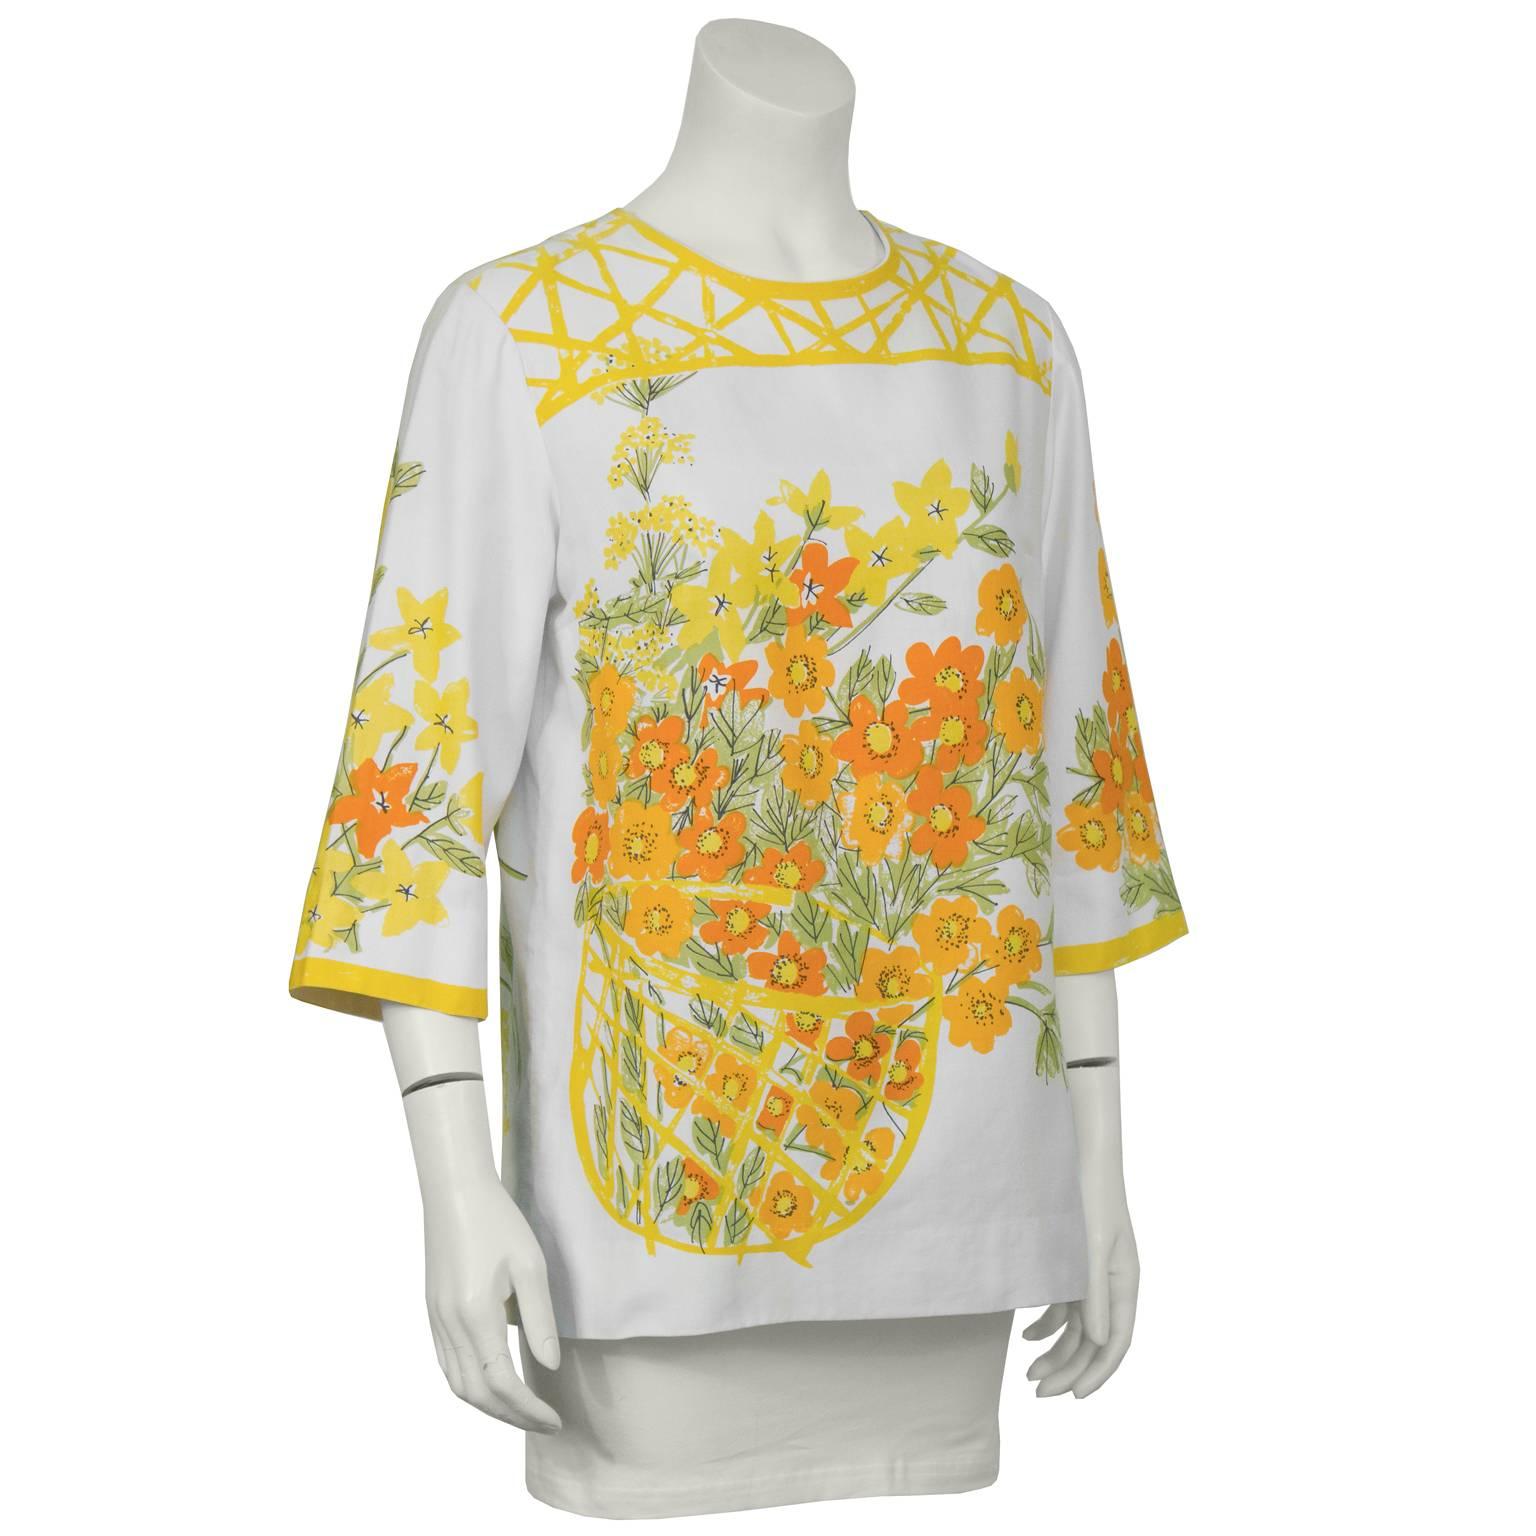 Blouse en coton Vera à manches 3/4 des années 1960. Le chemisier présente un imprimé floral aquarelle typique de l'été, composé de fleurs orange et jaunes avec des feuilles vertes dans un panier, sur le devant et le dos, ainsi que sur les manches.